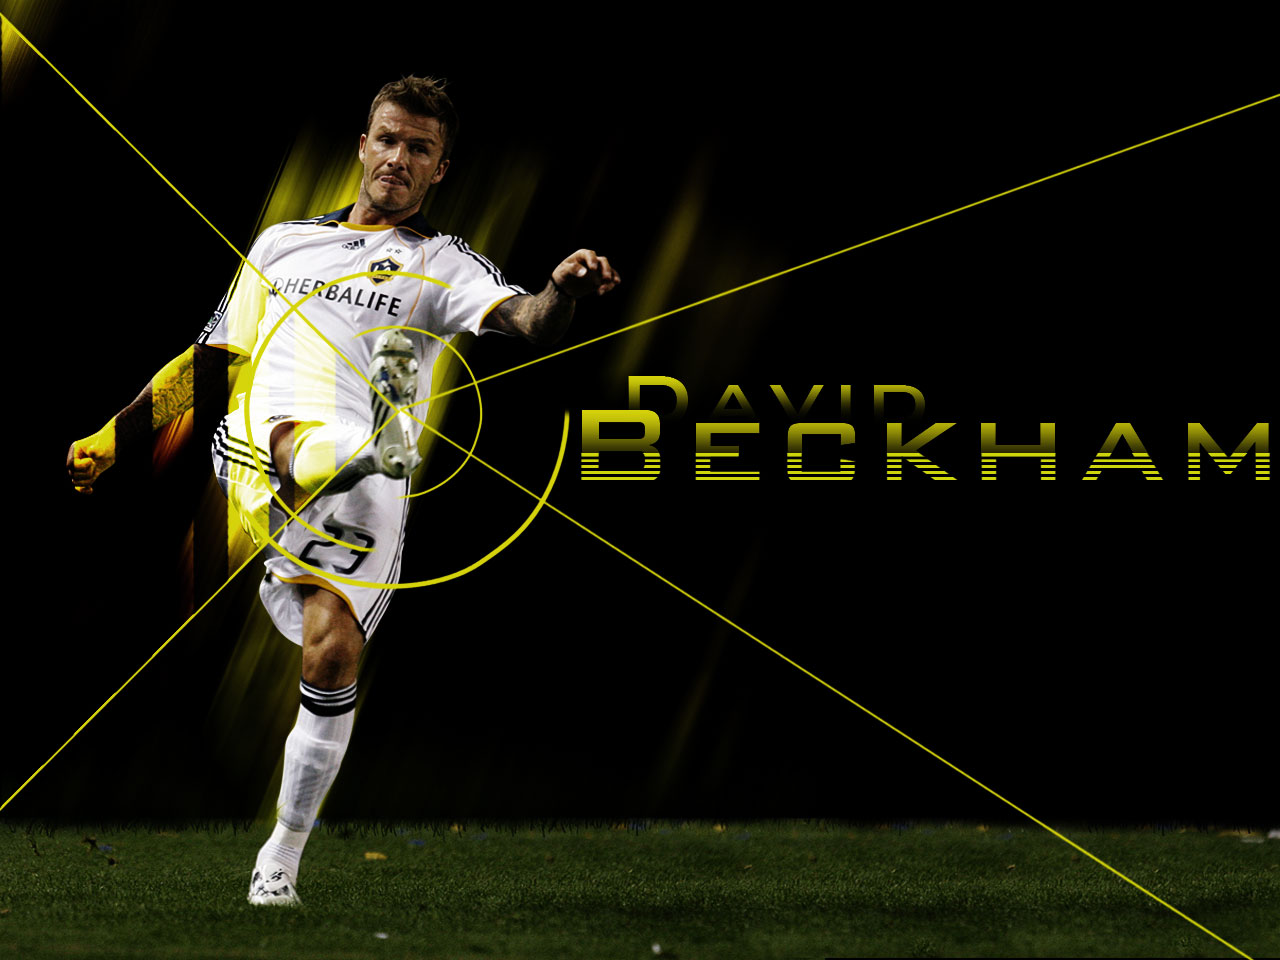 Football Super Star Player David Beckham HD Wallpaper